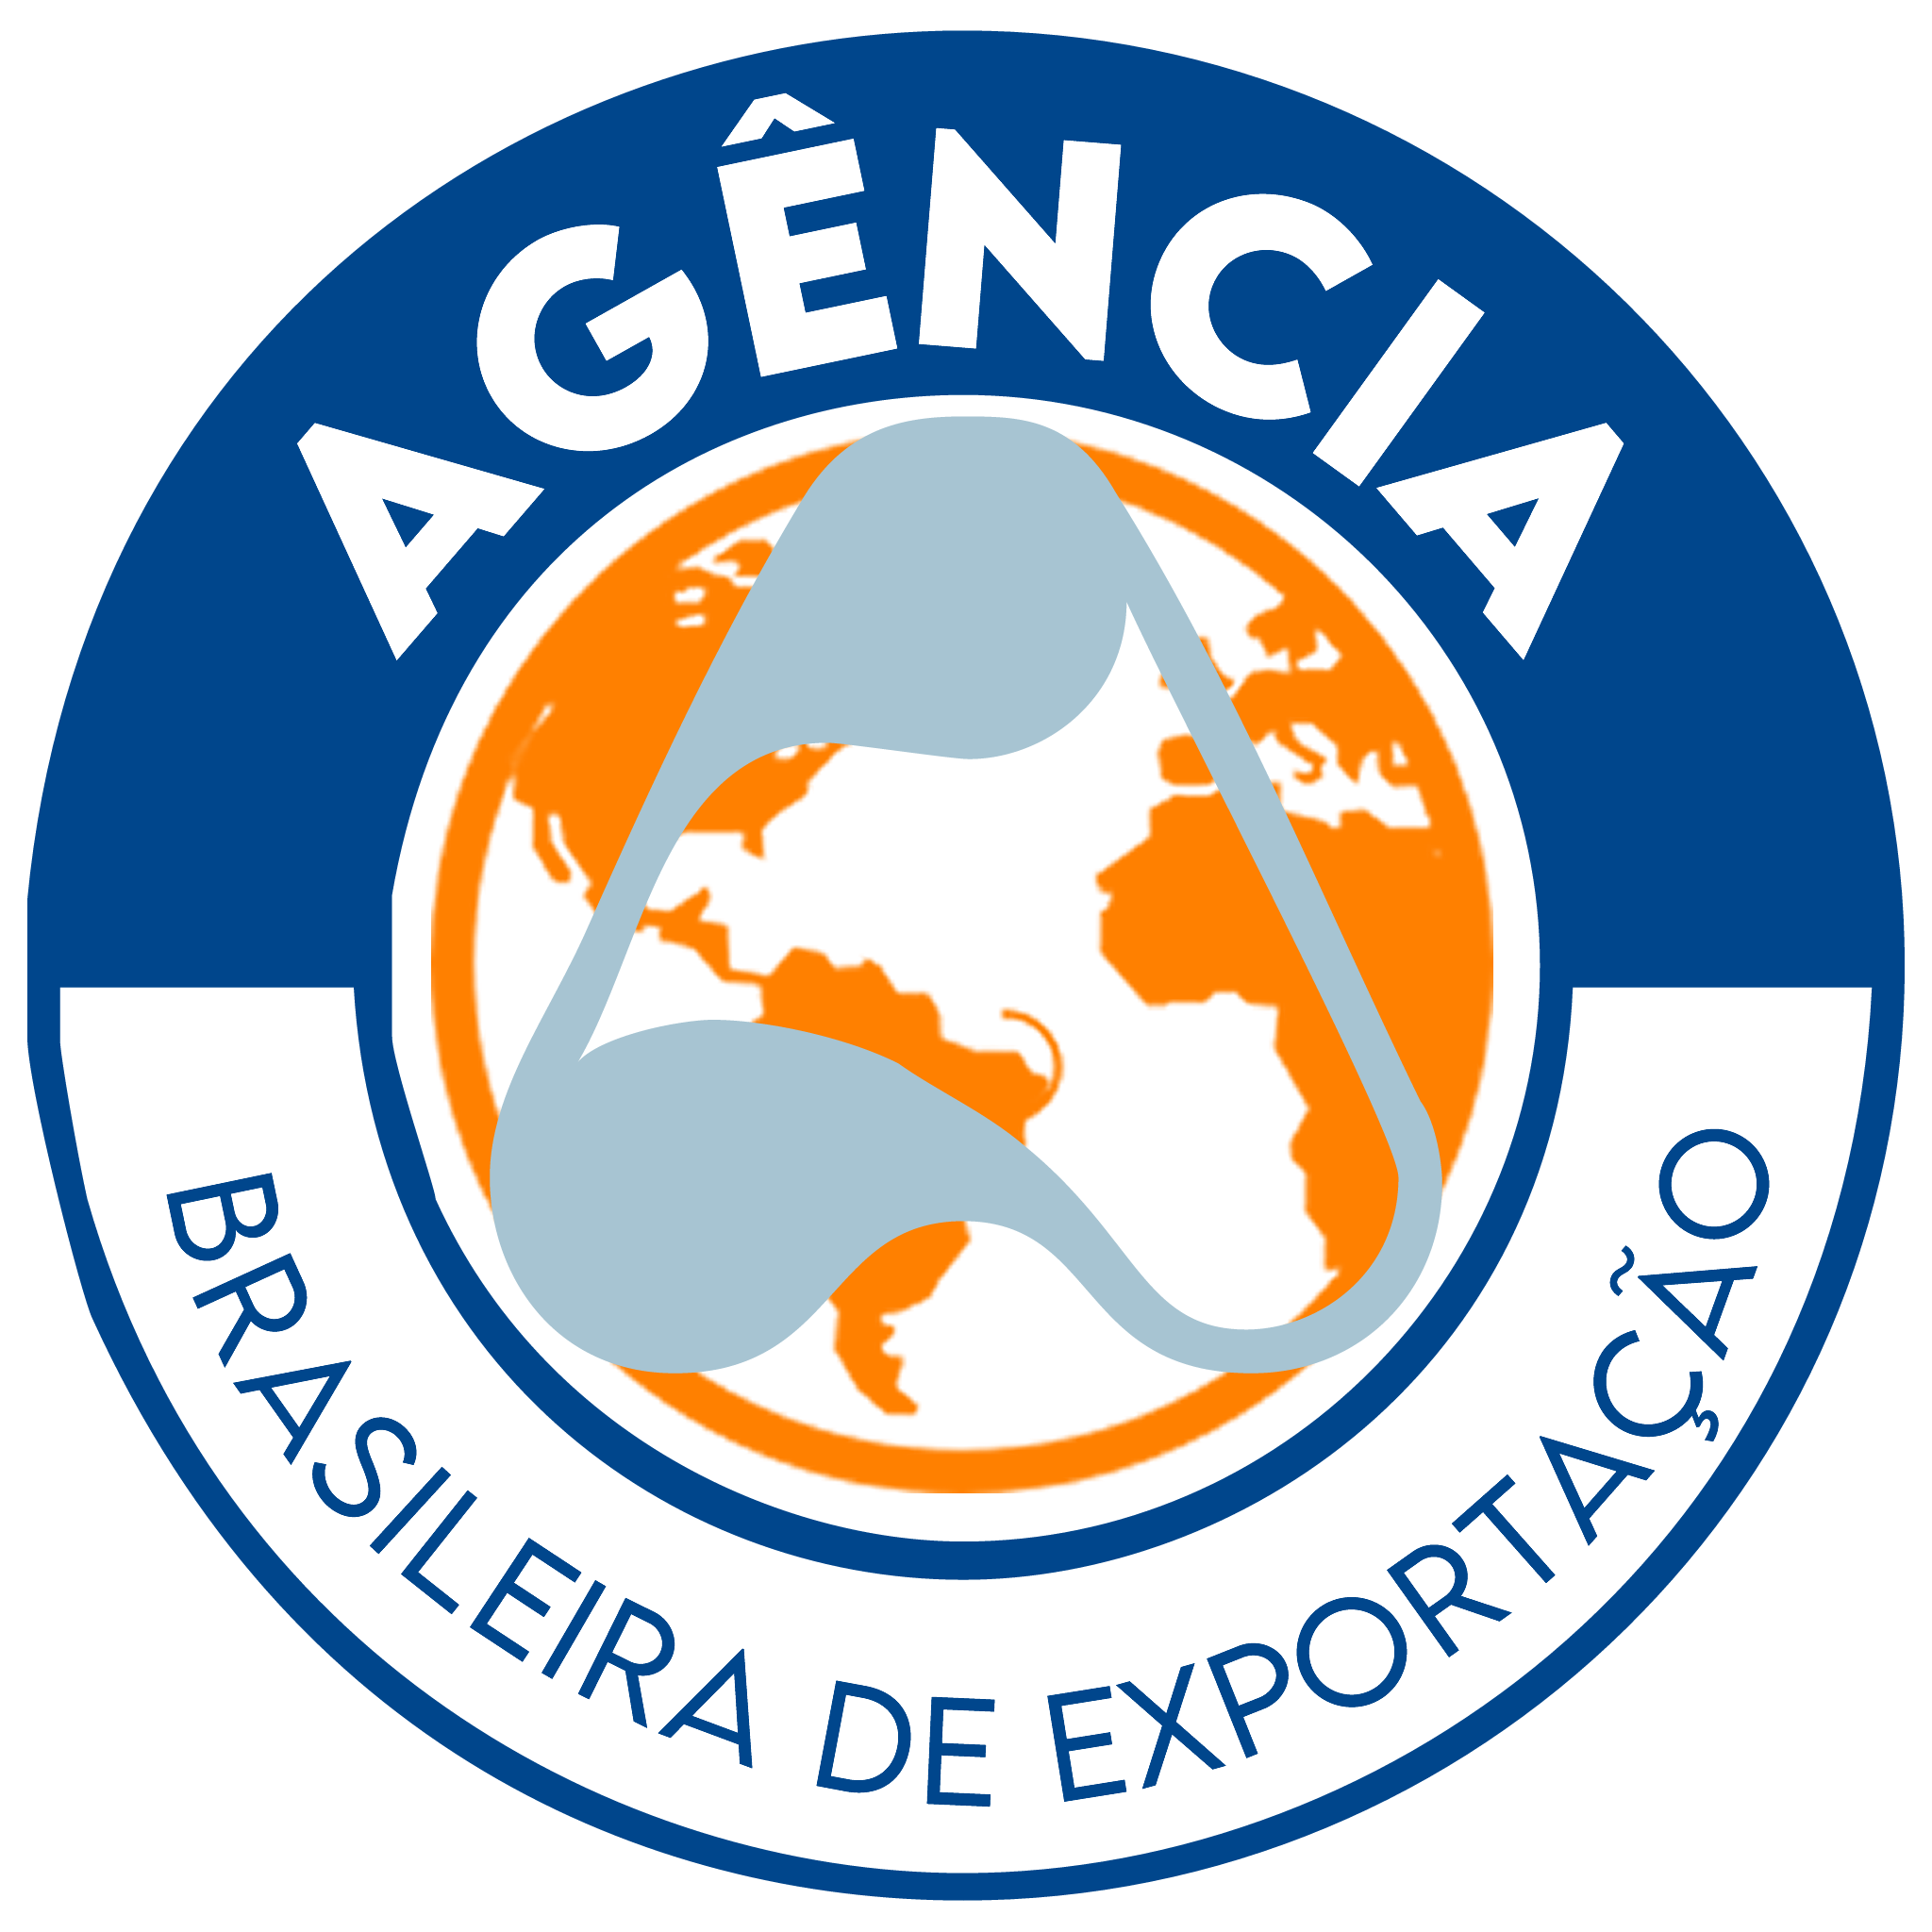 Agência Brasileira de Exportação